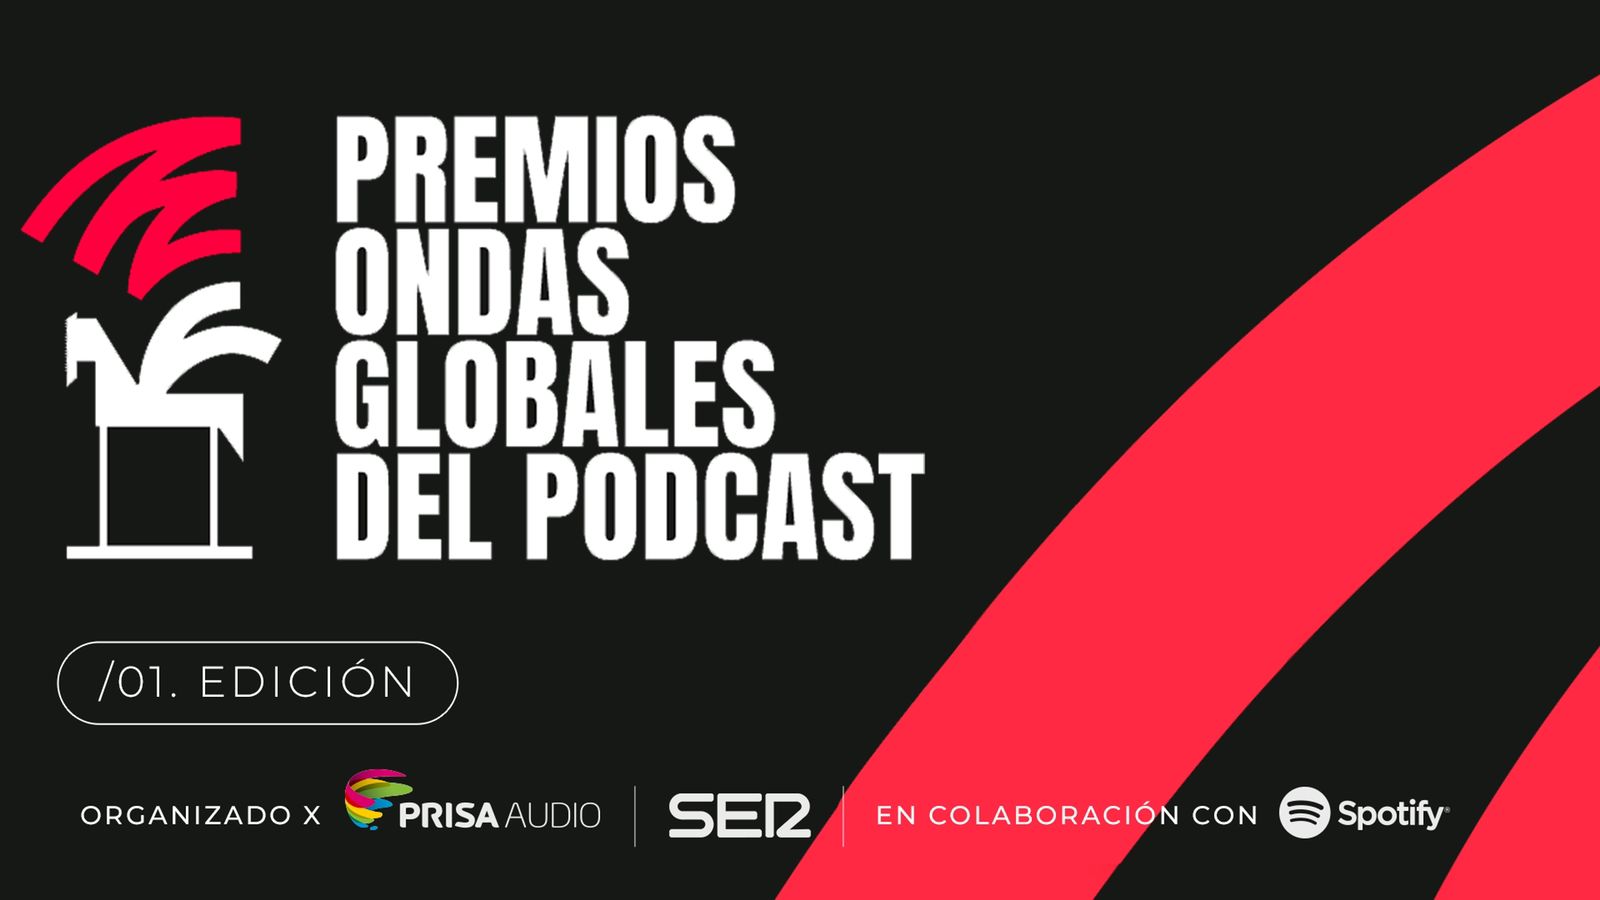 Todo sobre la 1ra edición de los Premios Ondas Globales del Podcast